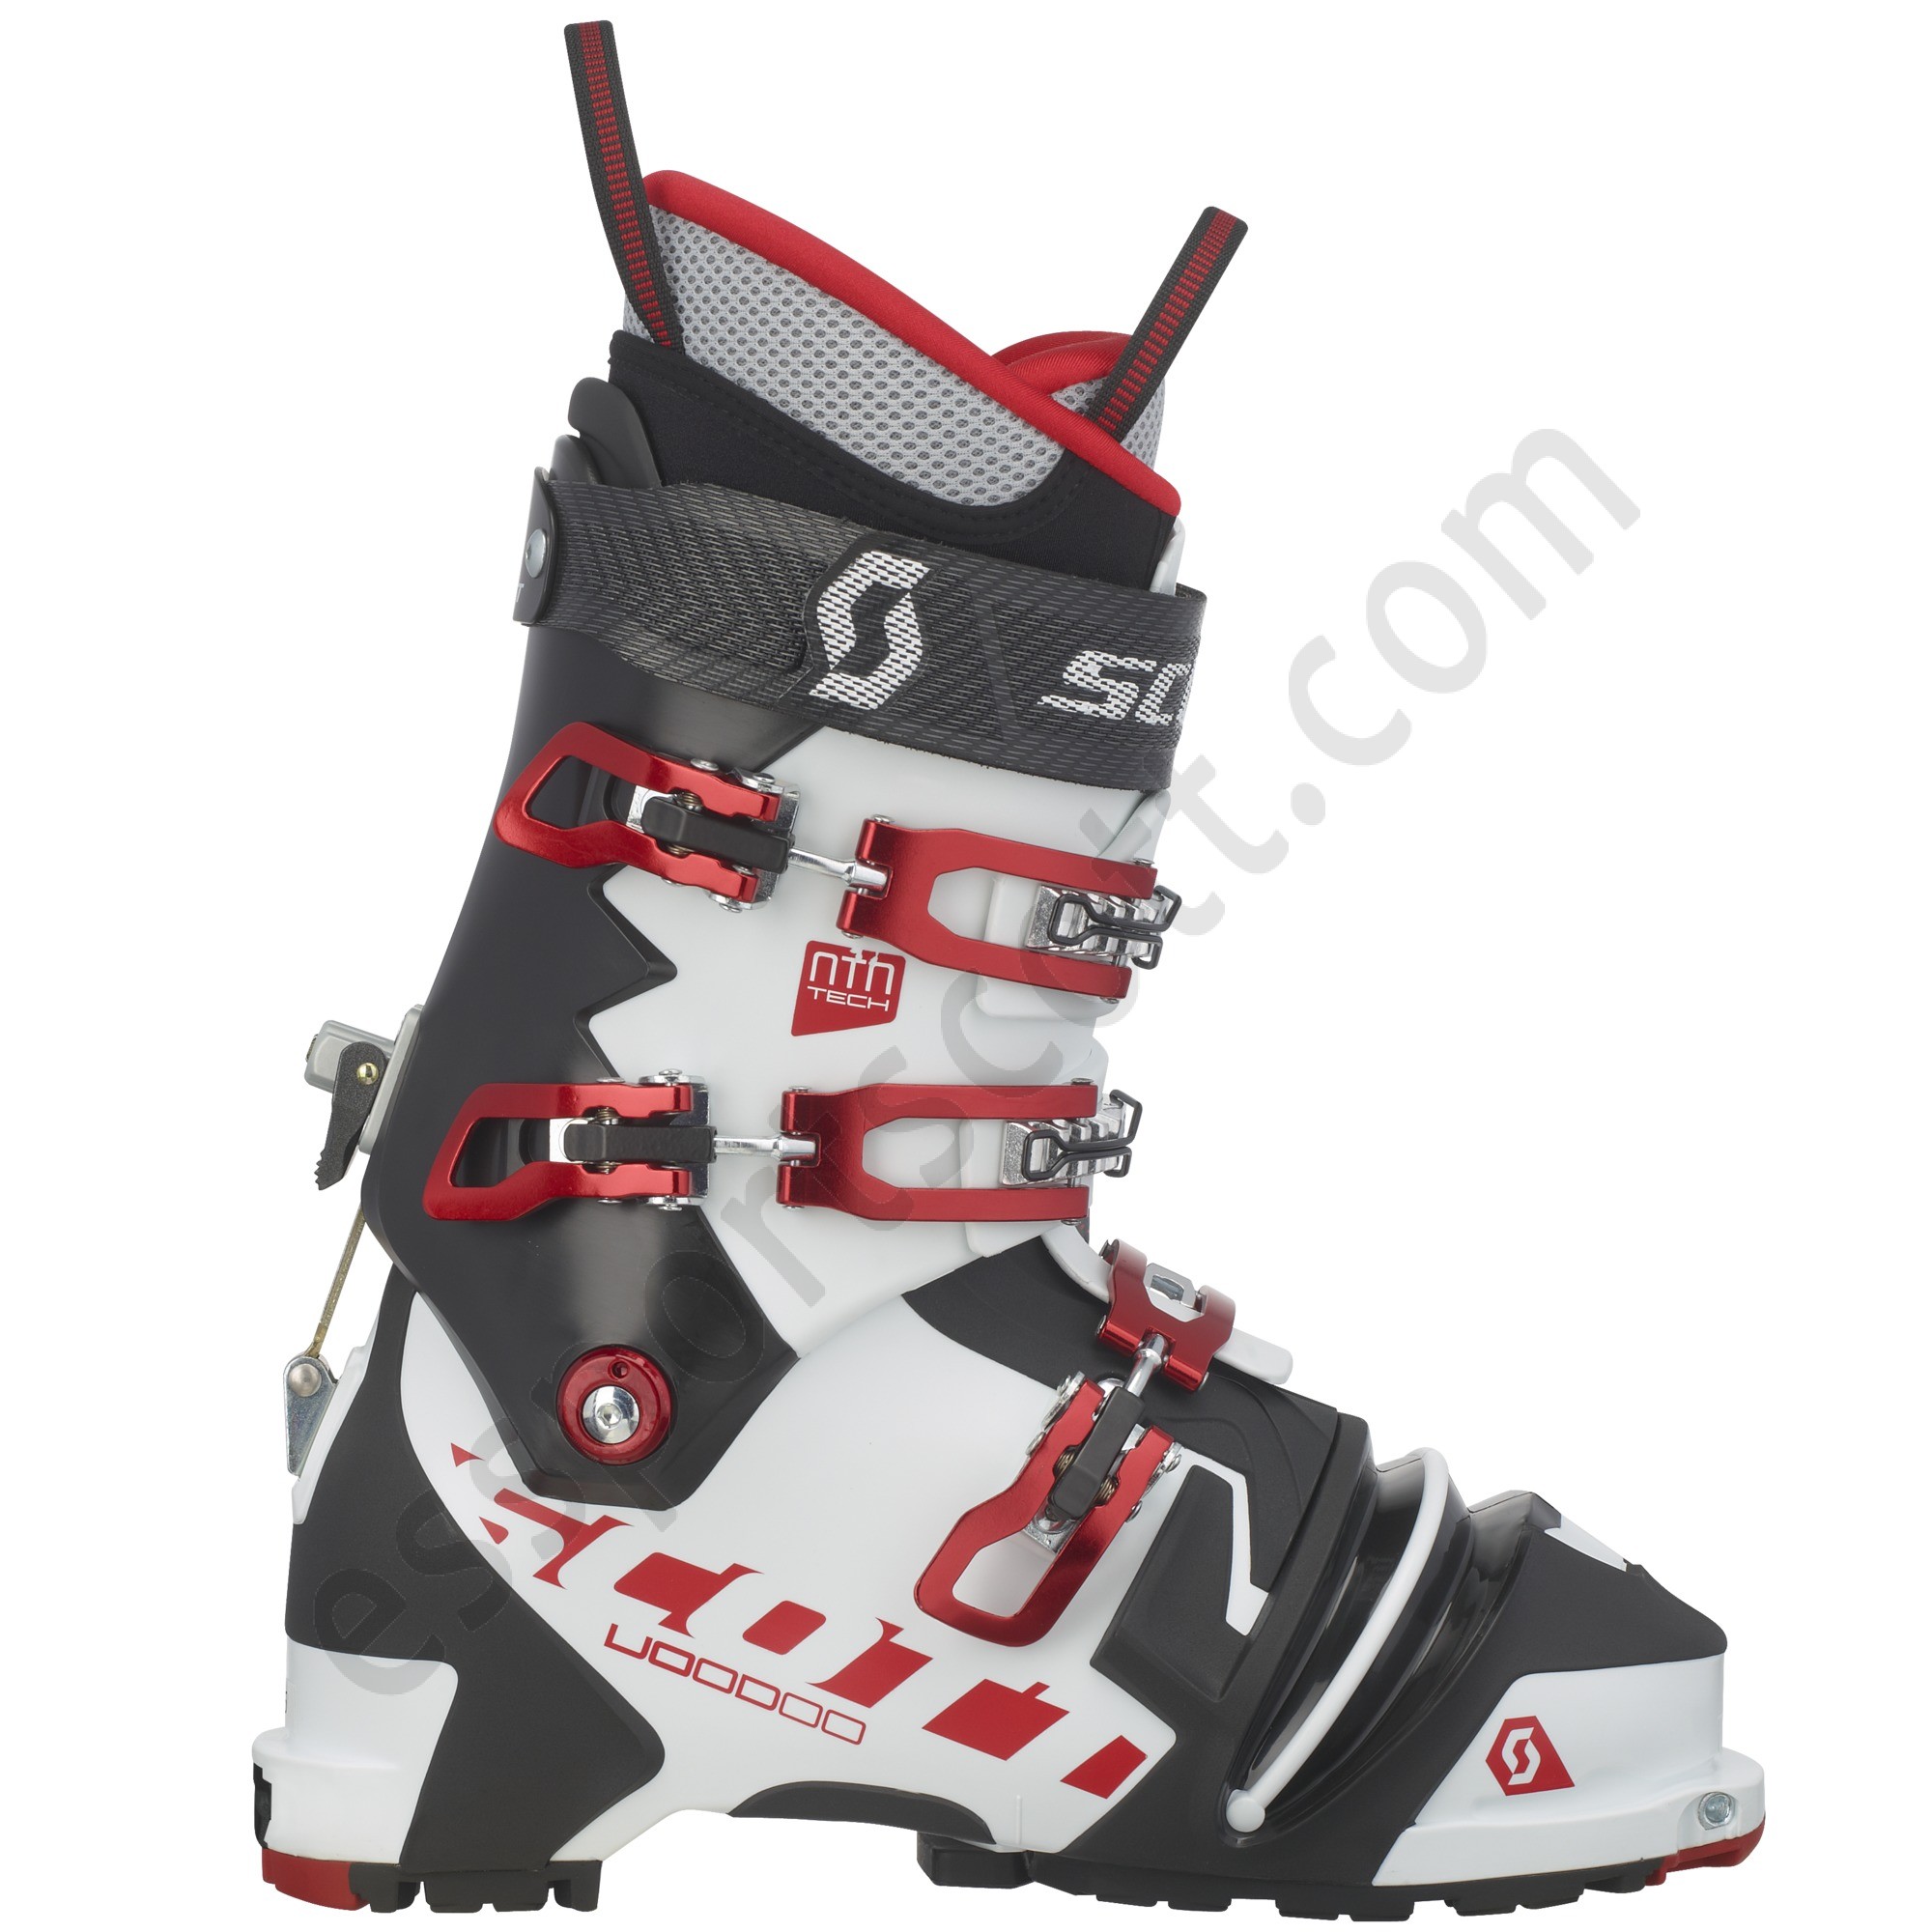 Scott Tienda ◇ Voodoo NTN Ski Boot - Scott Tienda ◇ Voodoo NTN Ski Boot